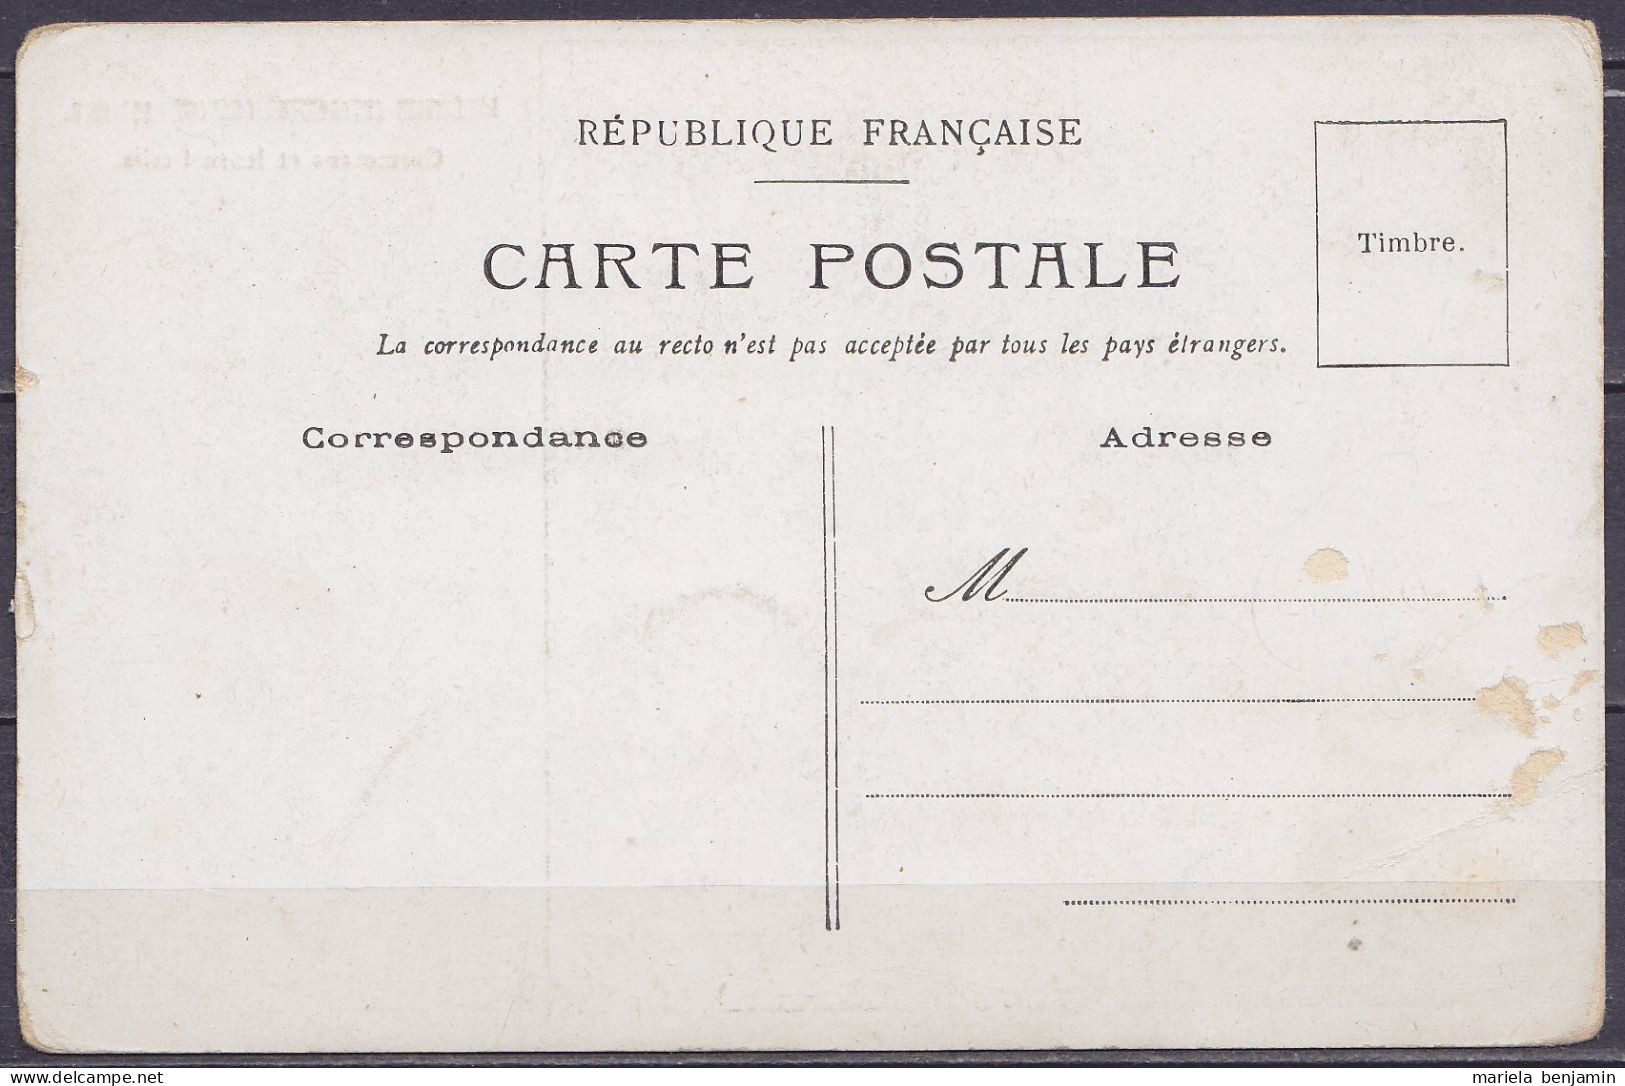 Carte Postale CP Expédition Antarctique Charcot 1903-1905 / Cormorans Et Leurs Petits - Non Circulée // Tad604 - Storia Postale